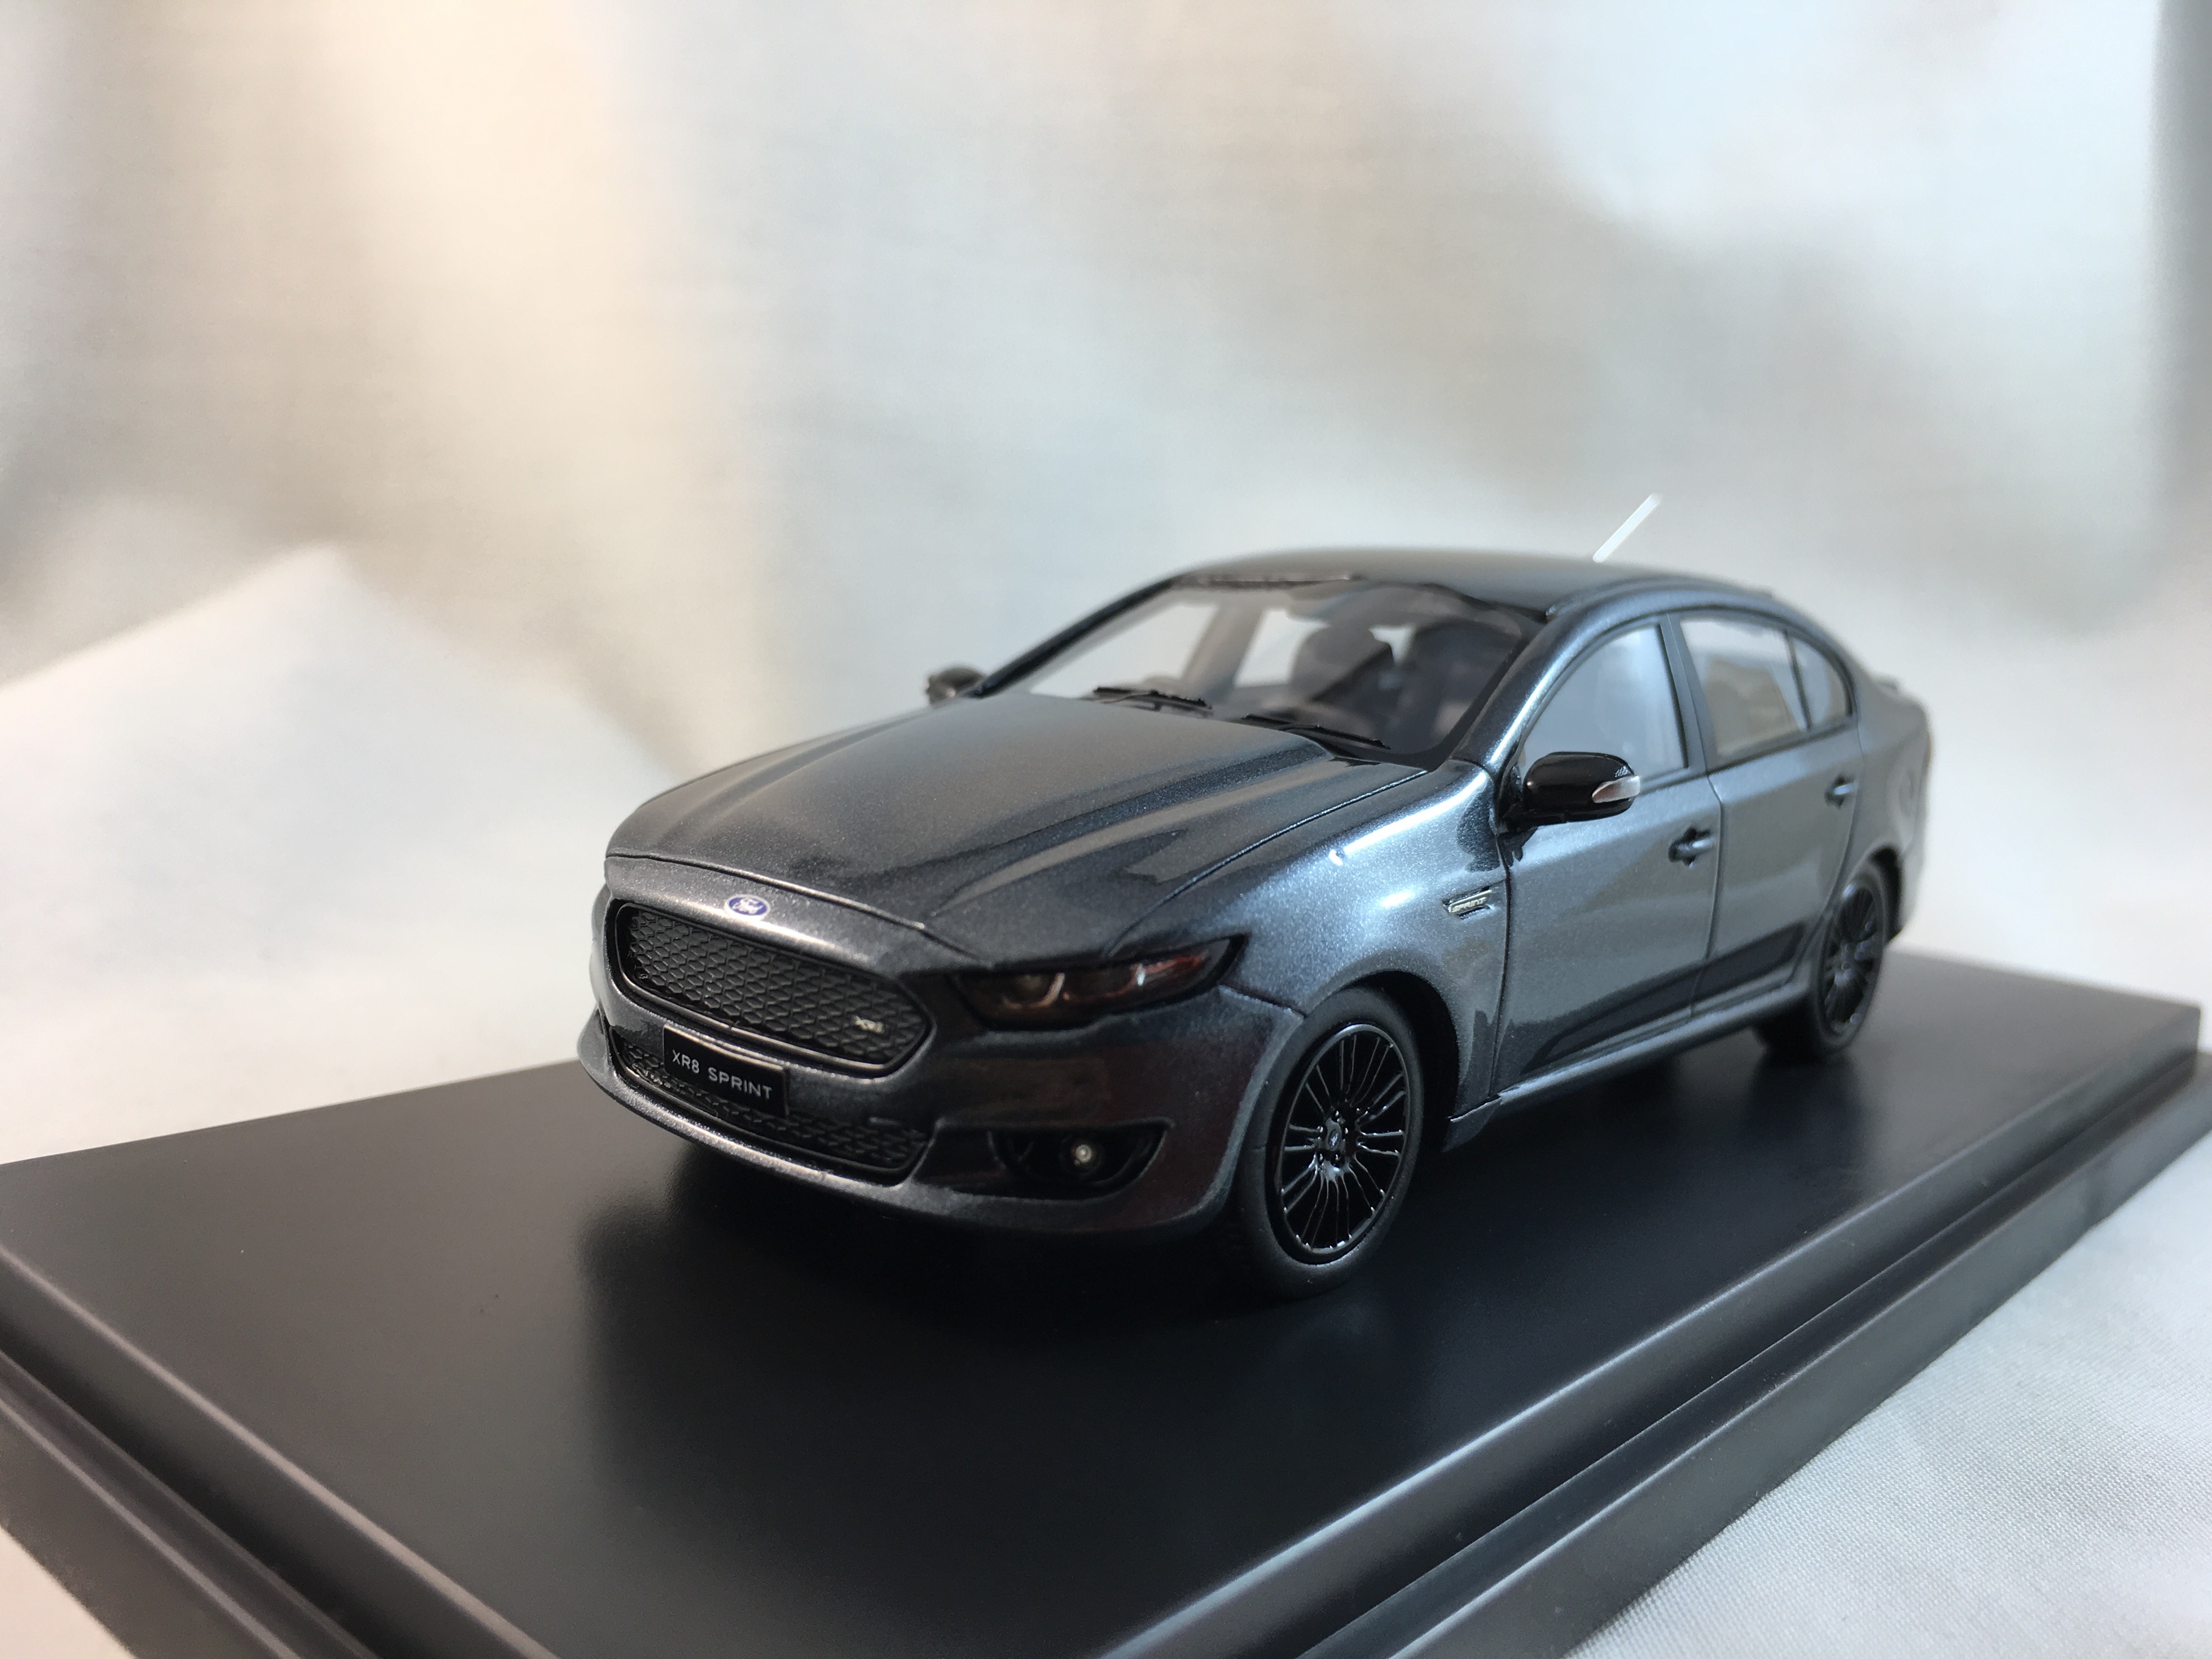 Ford Falcon XR8 Sprint – Smoke